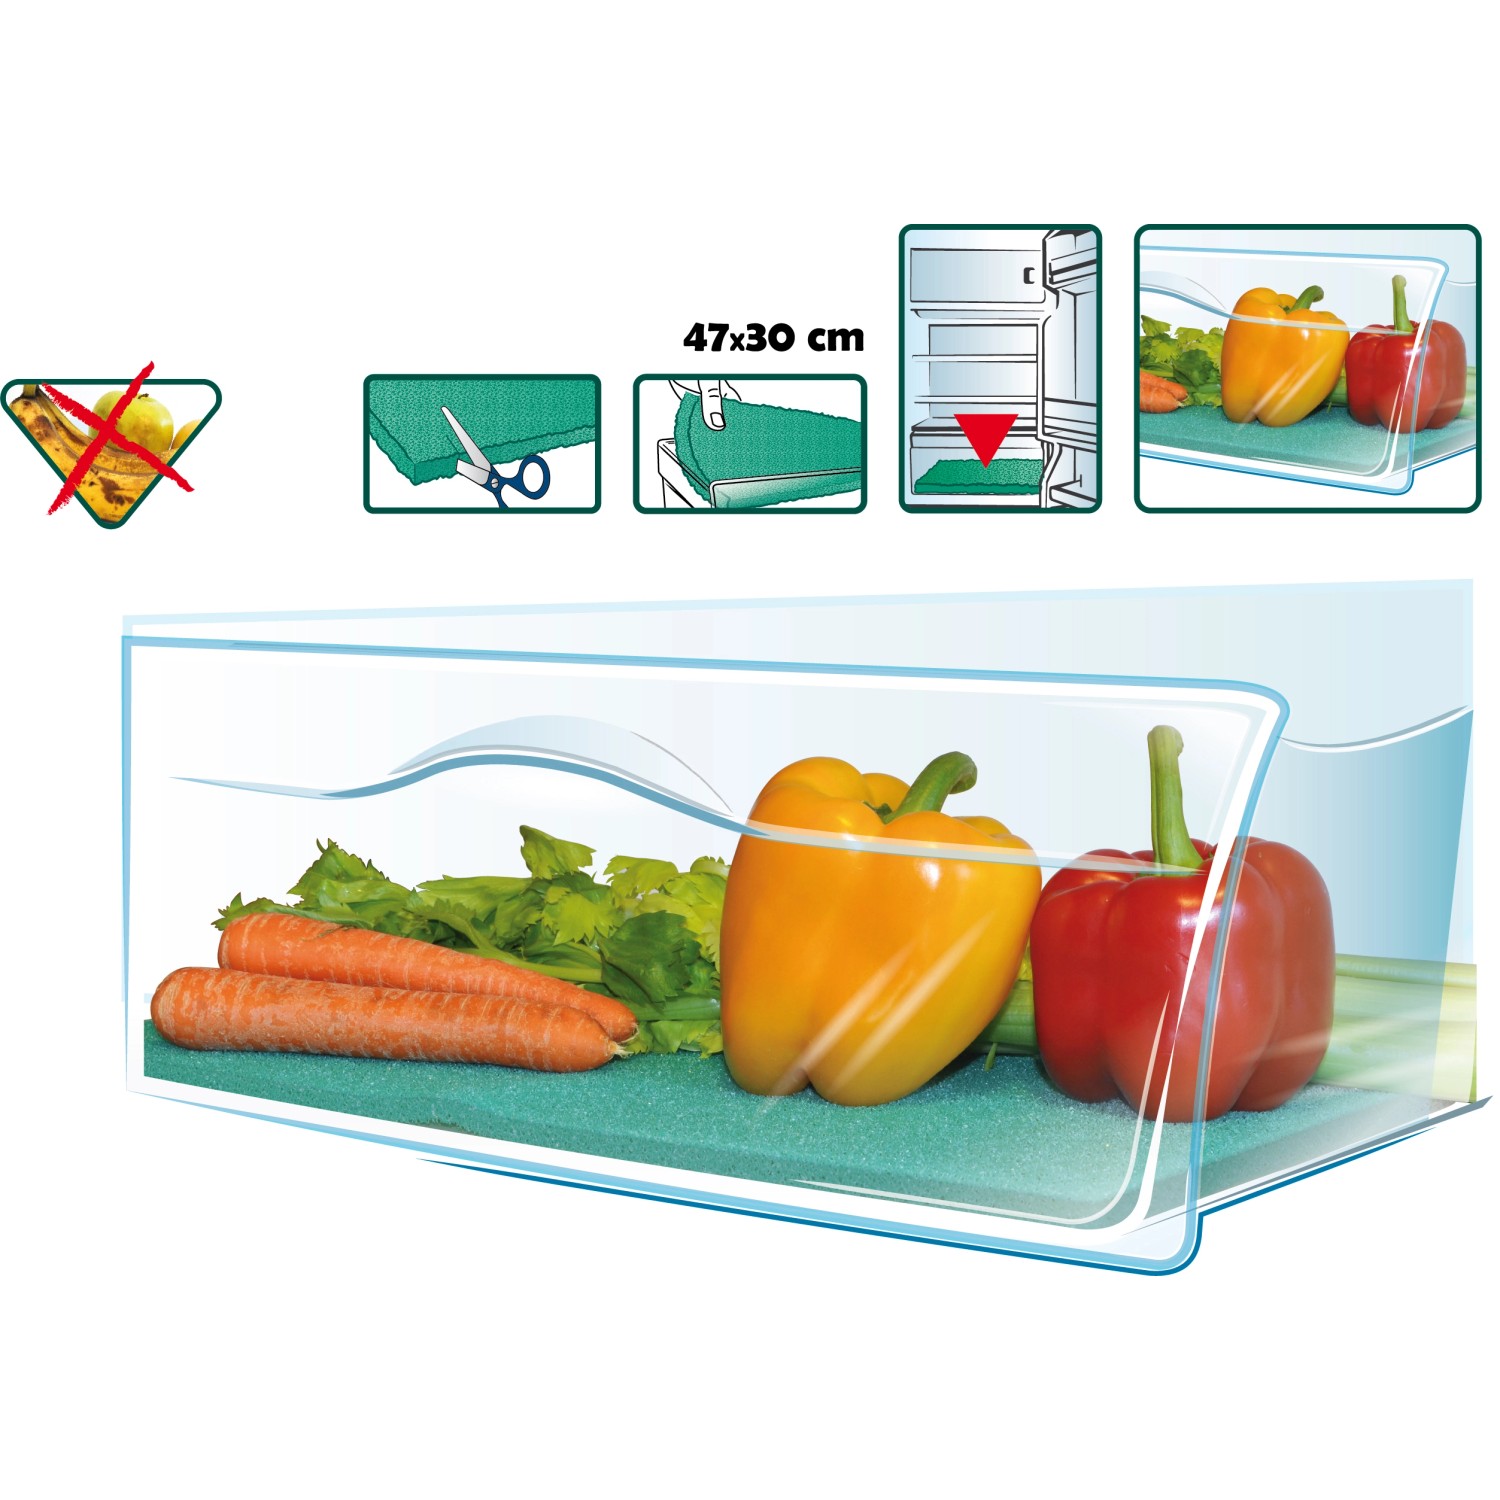 LUTH Premium Profi Parts - Tappetino frigorifero antimuffa Tappetino  antibatterico Odore antimuffa che inibisce le verdure fresche può essere  tagliato